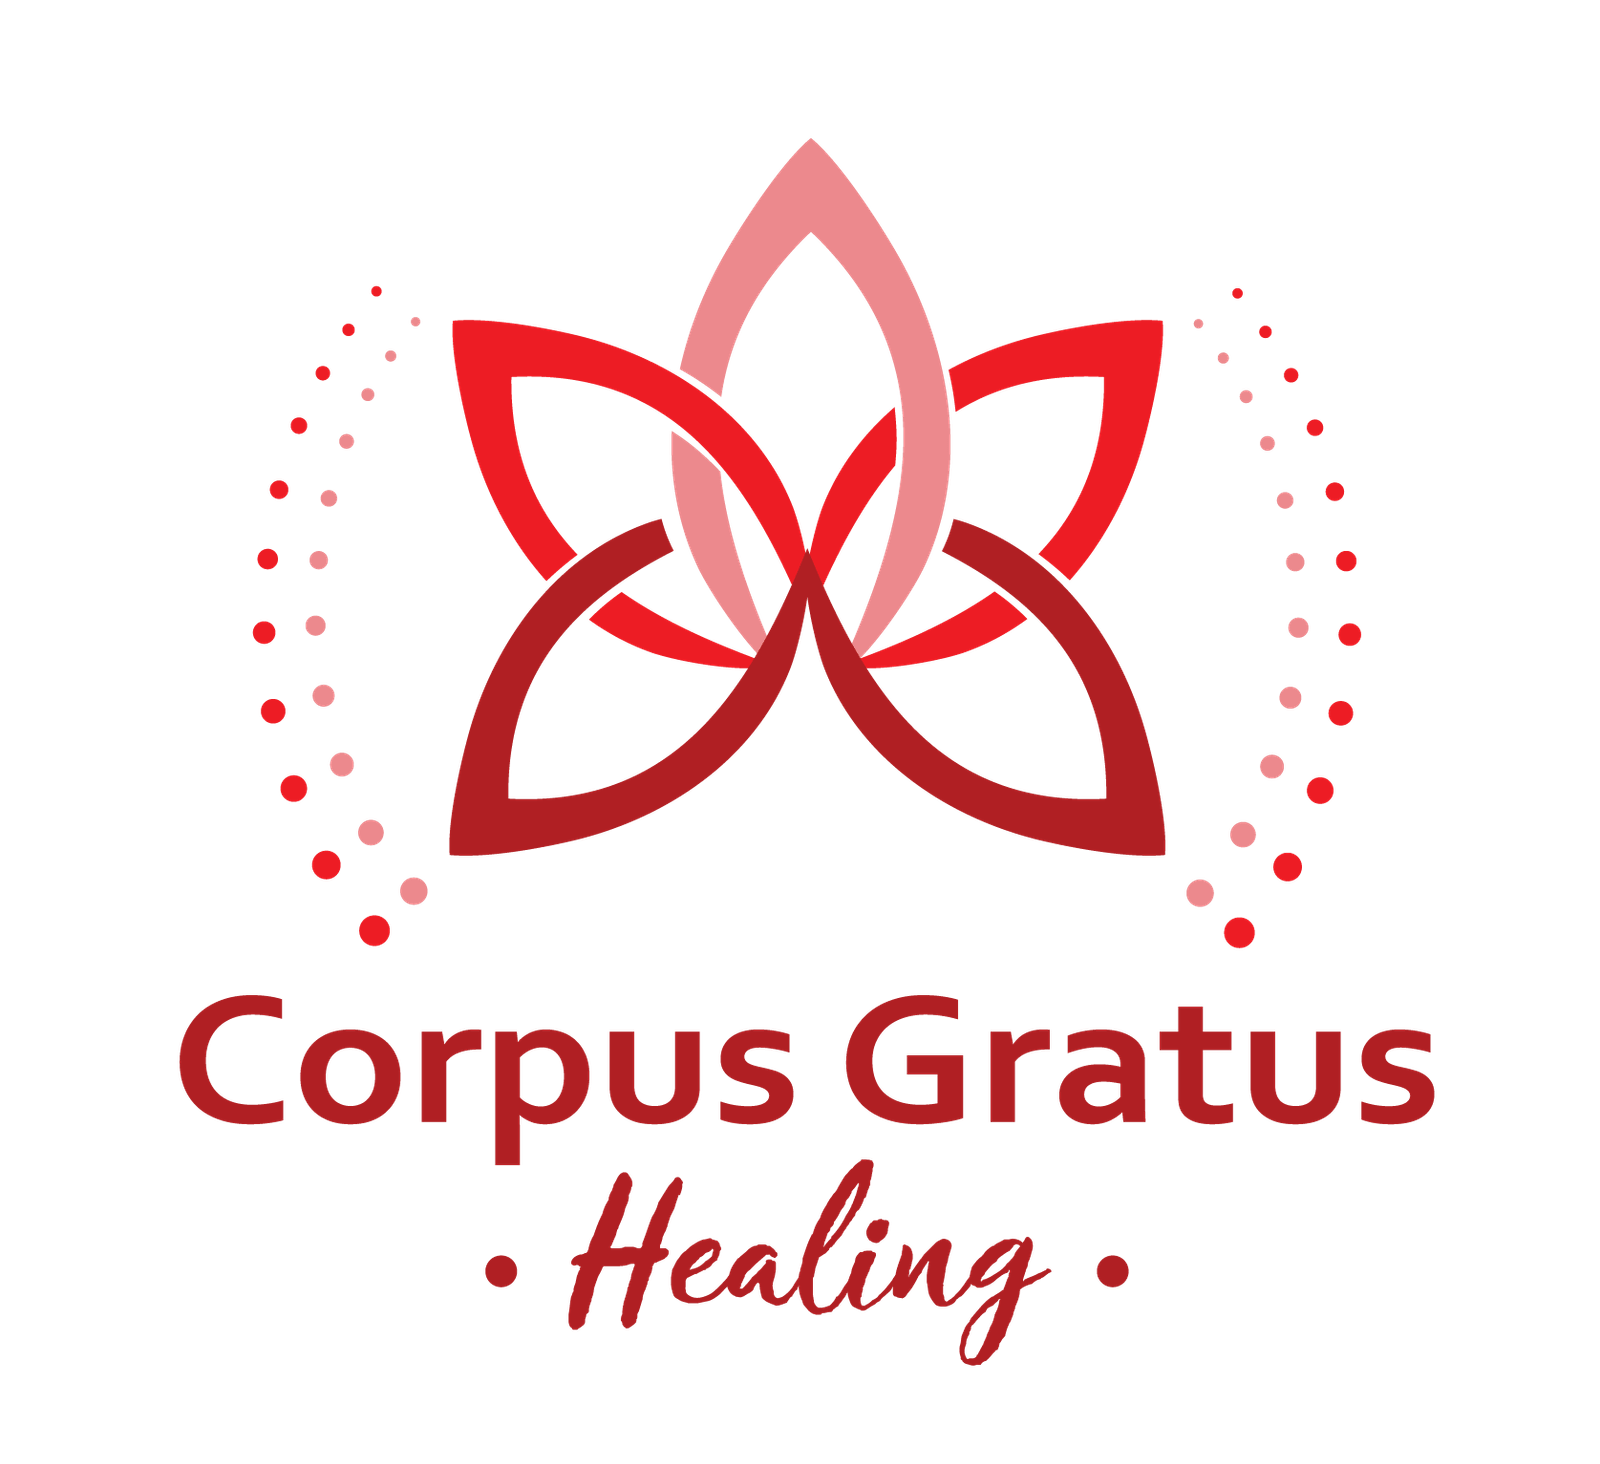 Corpus Gratus healing logo